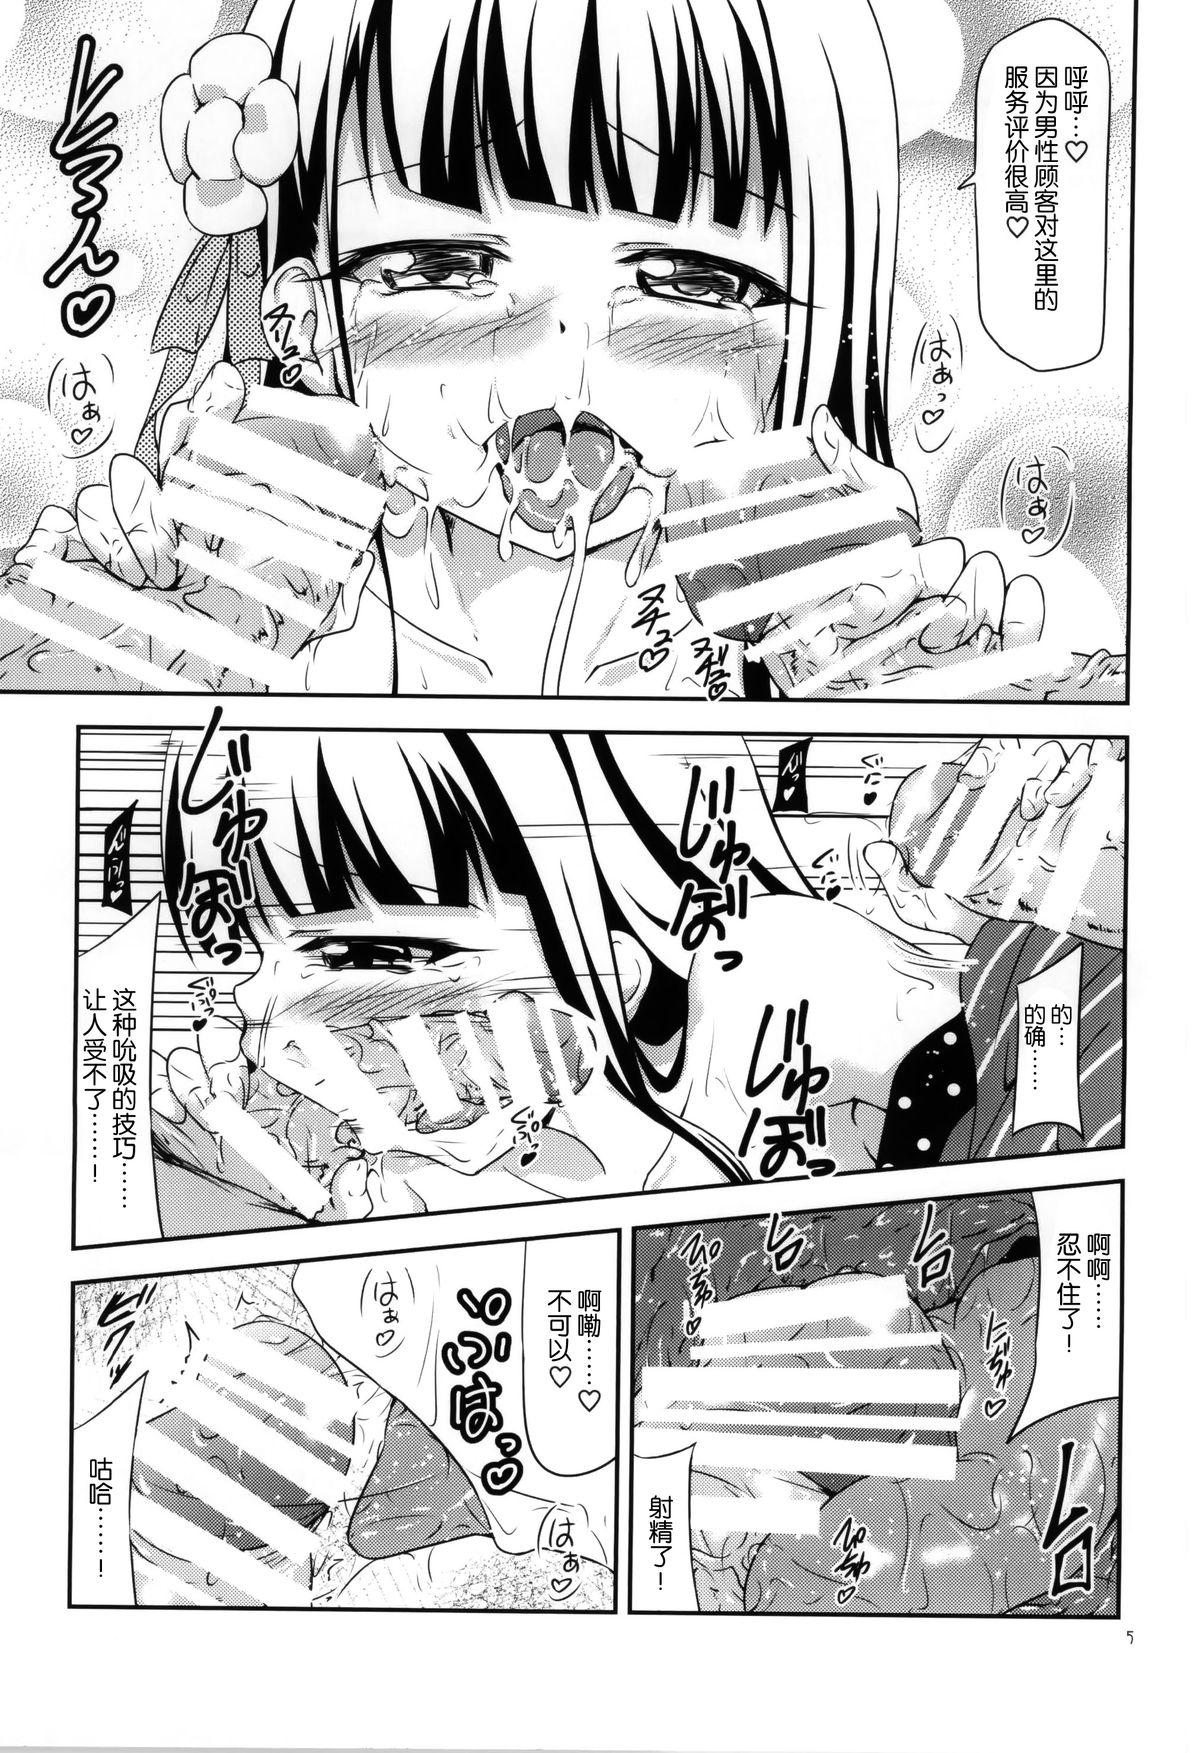 Metendo Amausaan no Himitsu Menu - Gochuumon wa usagi desu ka Roundass - Page 5